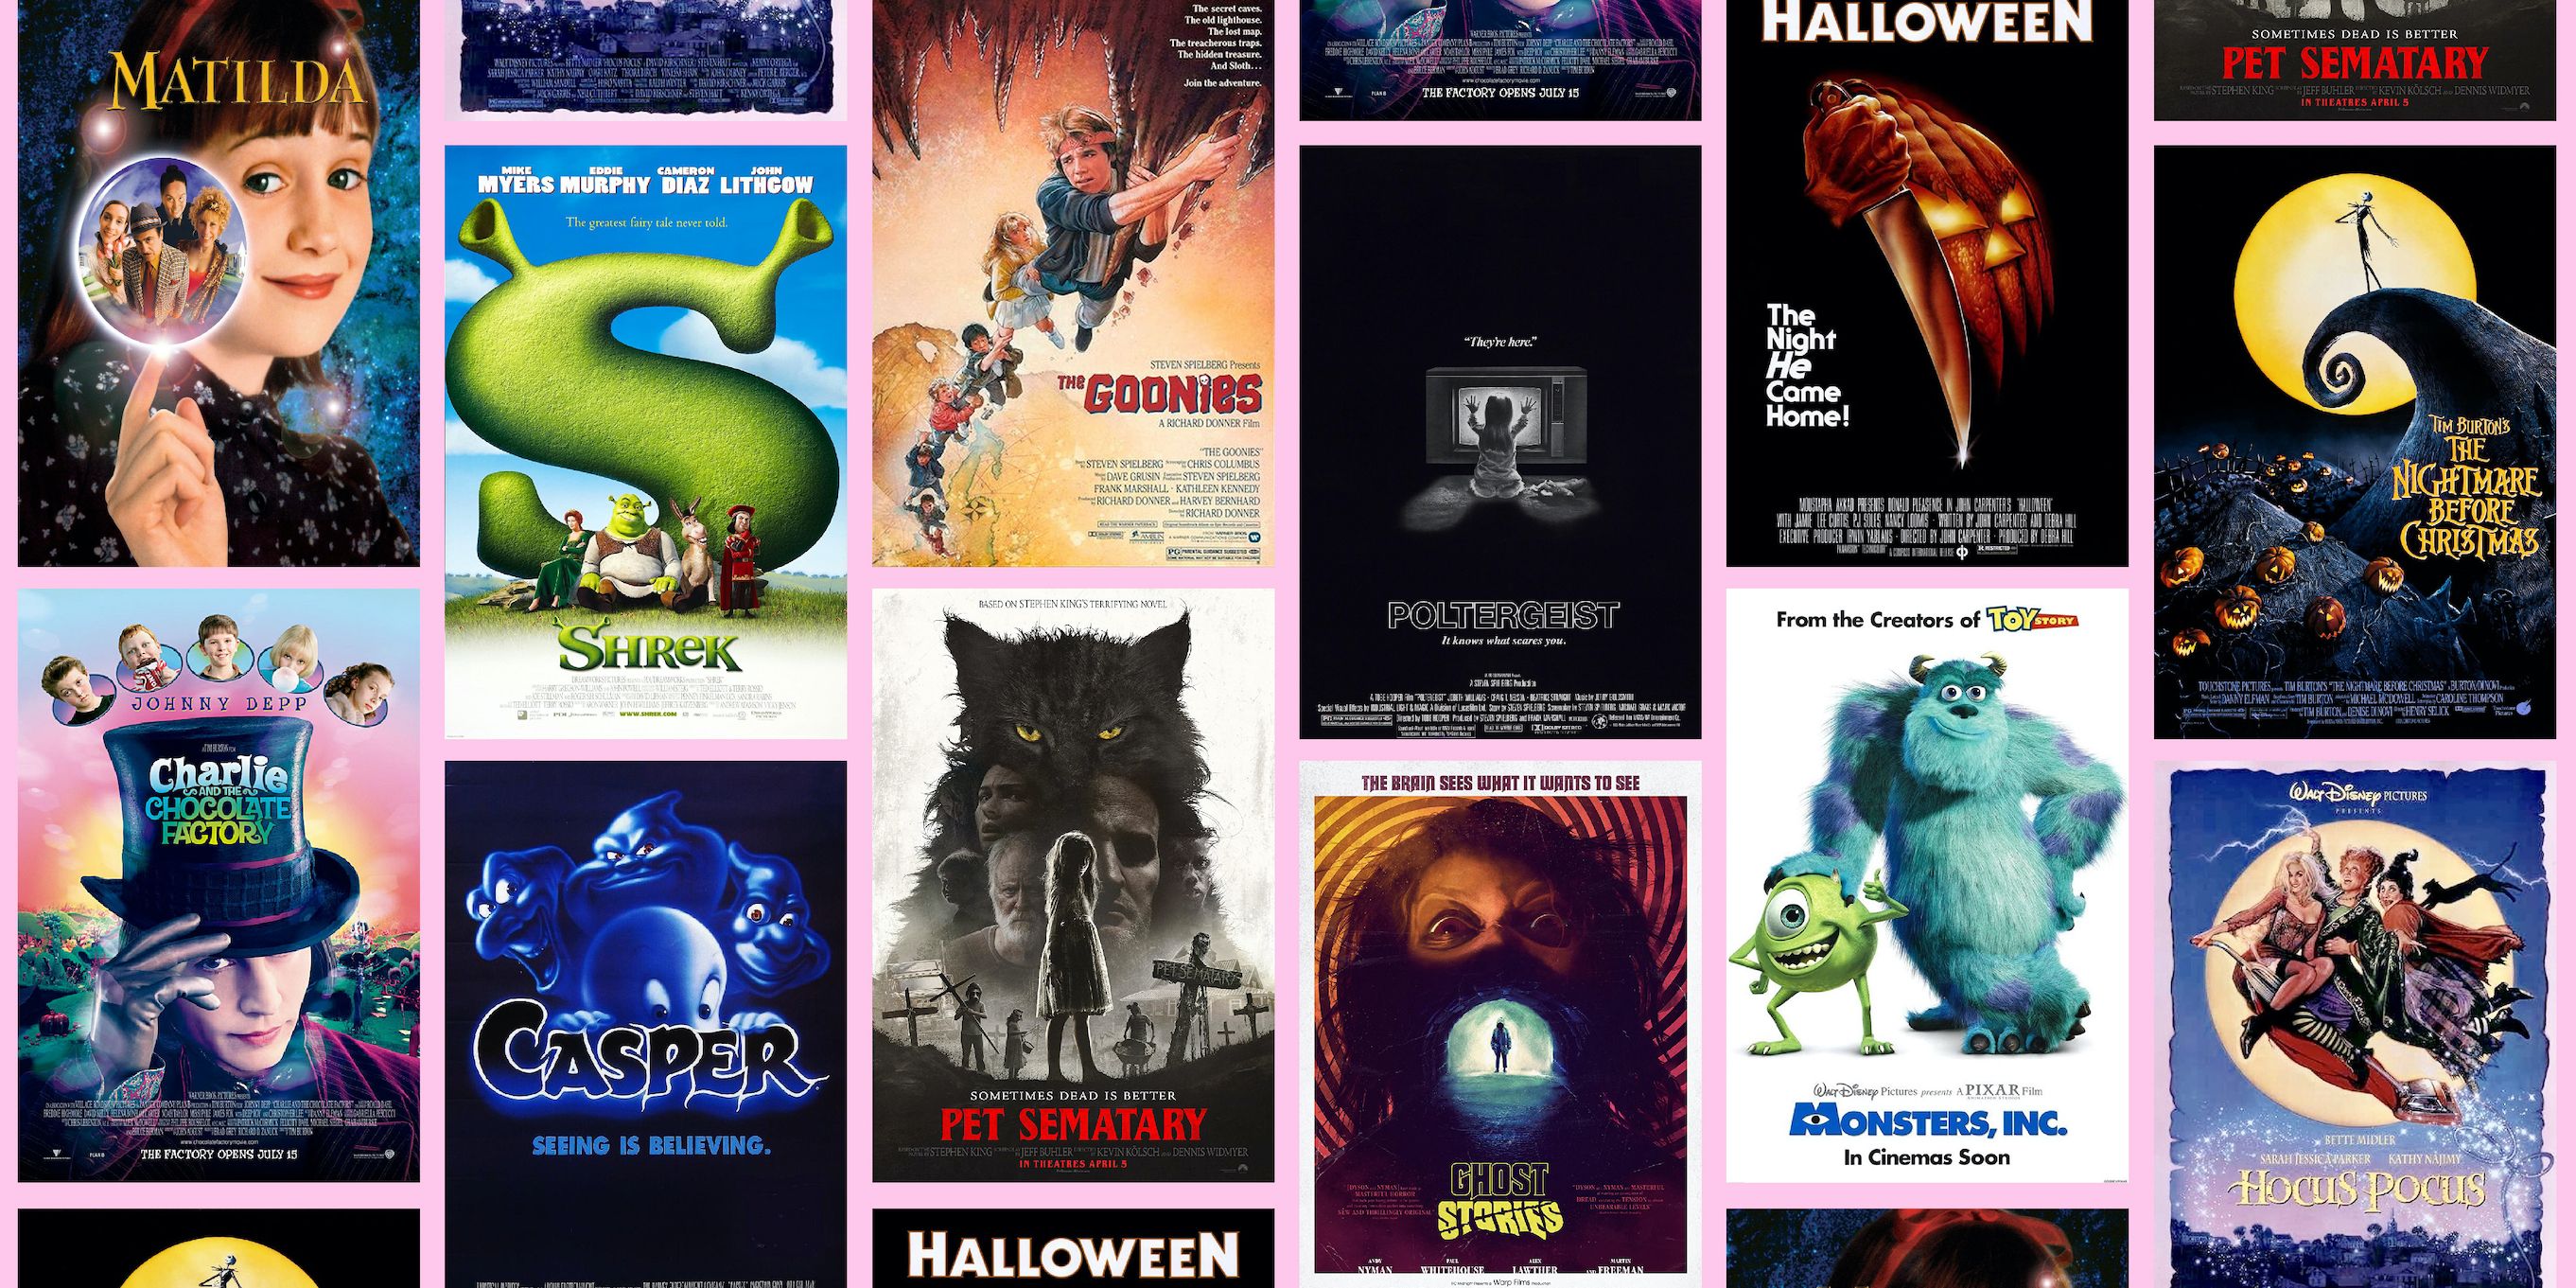 HalloweenMovies™  The Official Halloween Website 